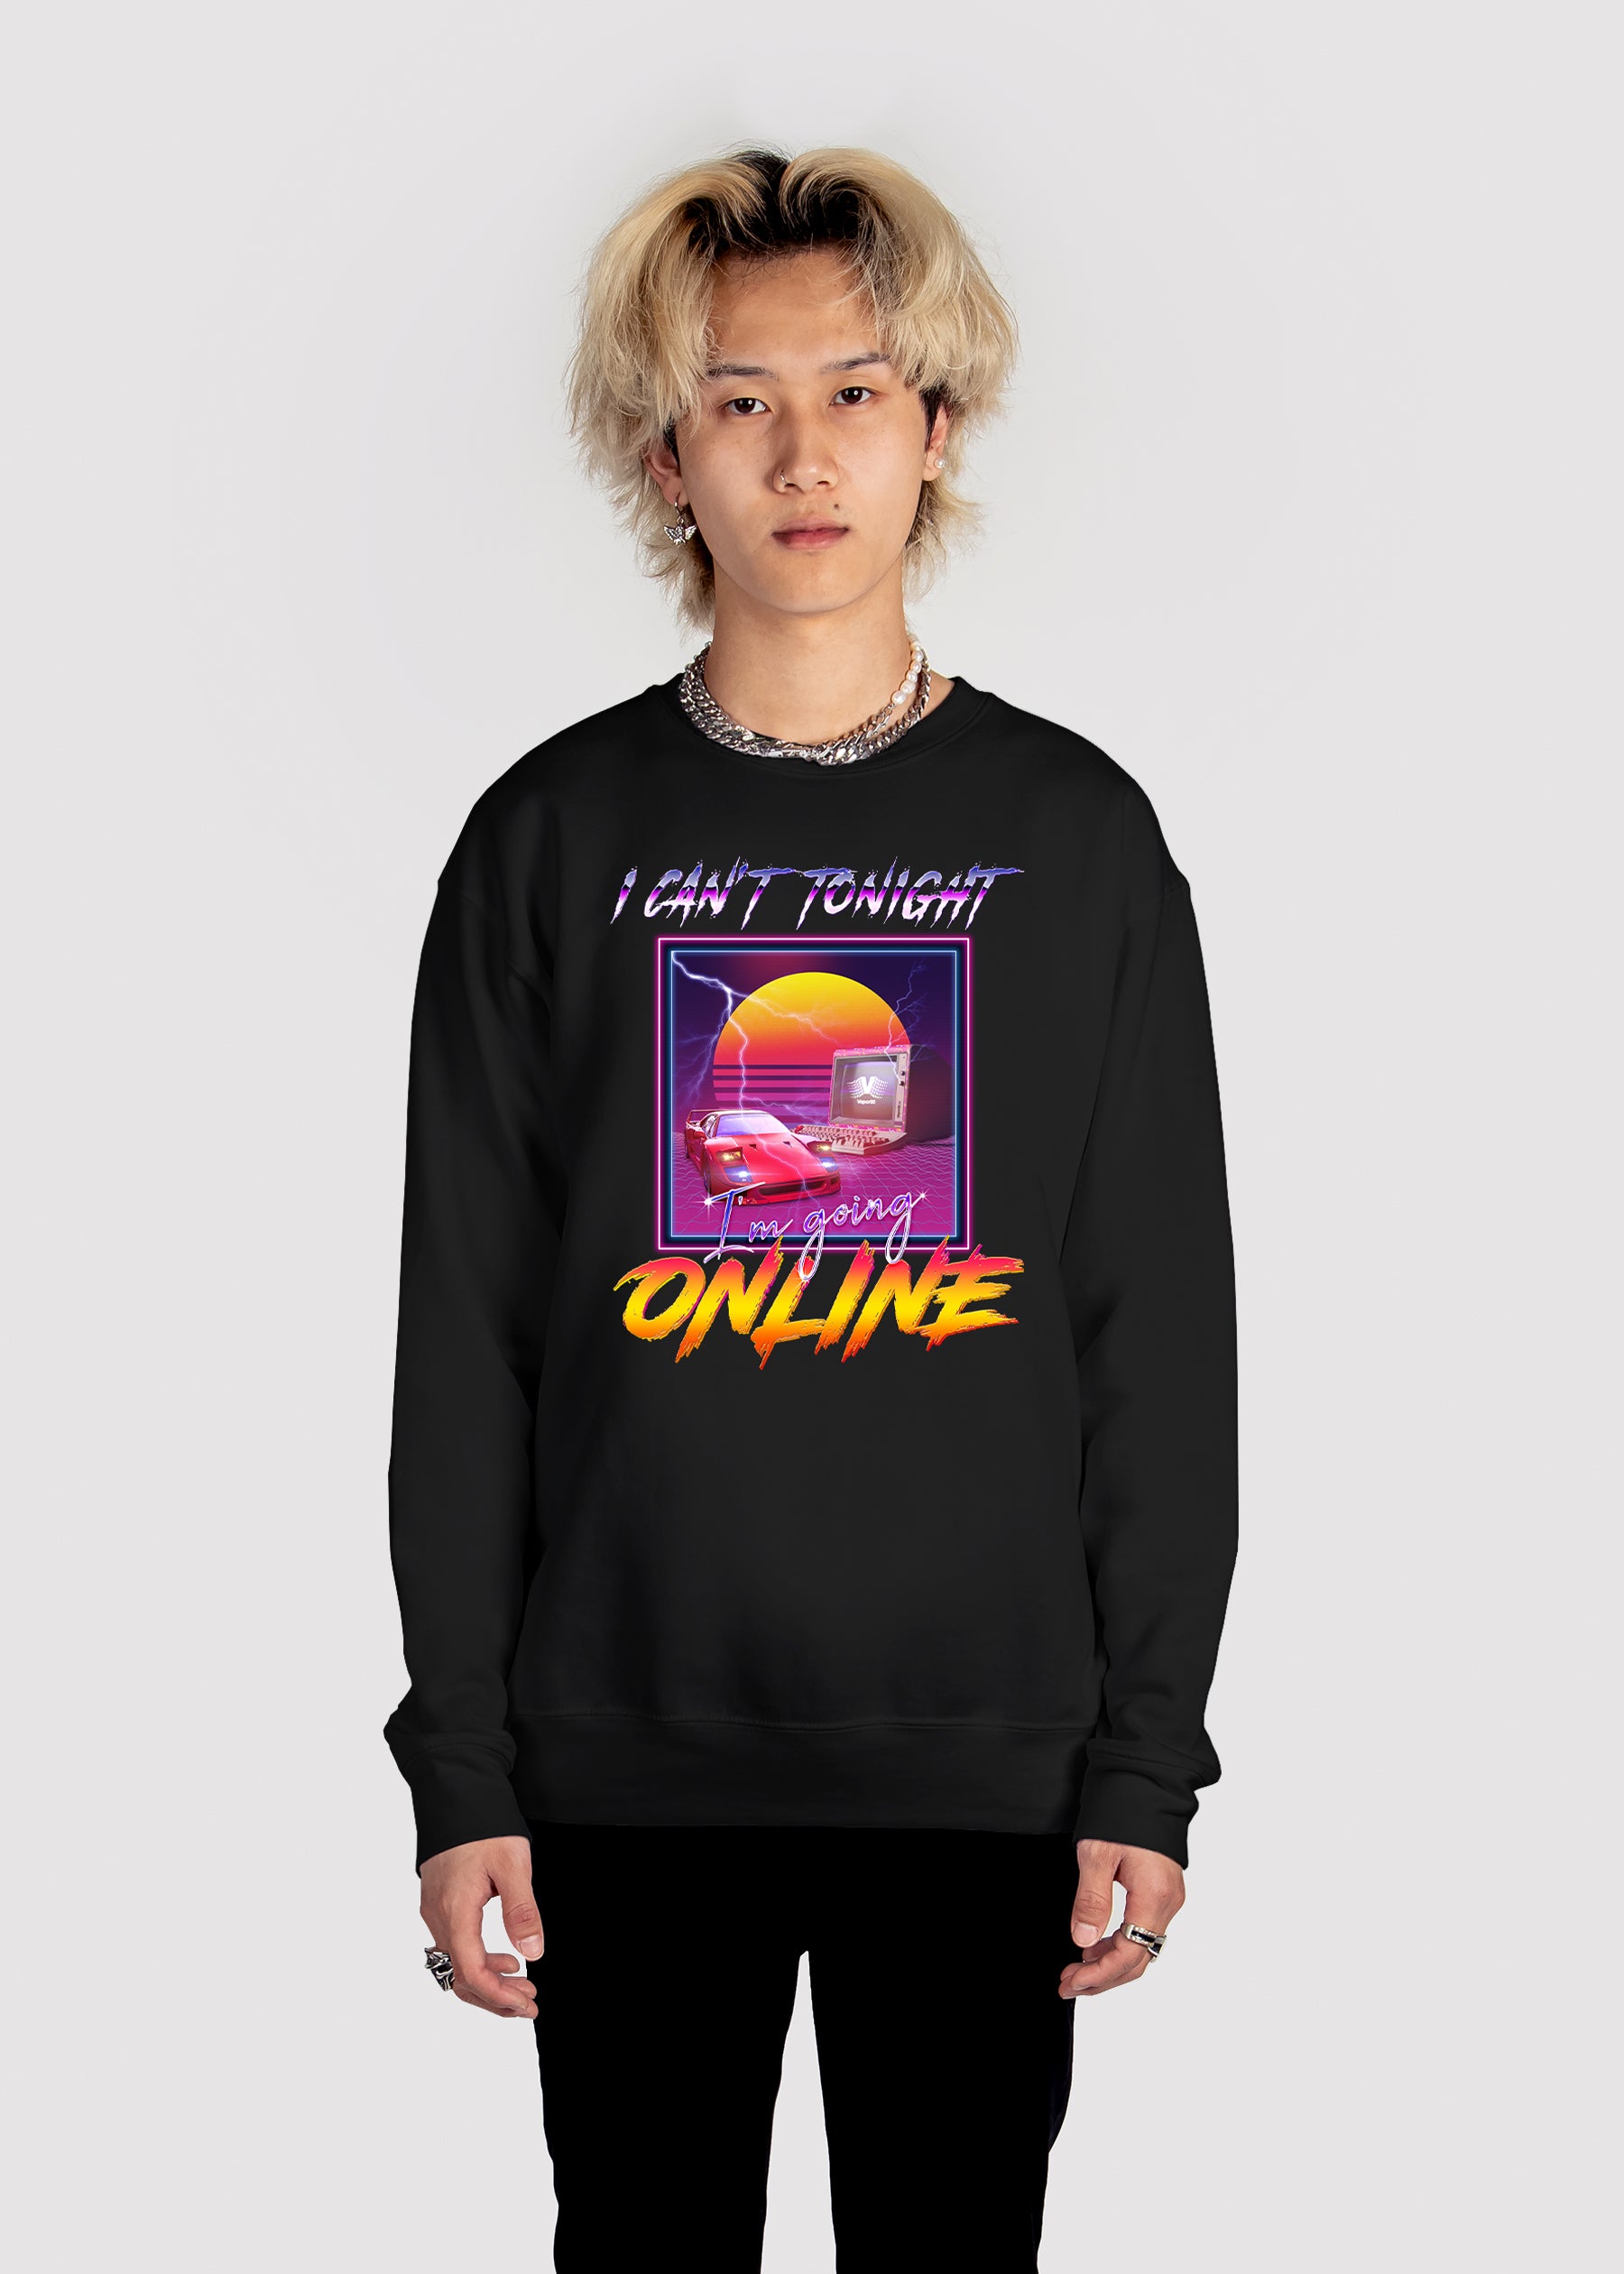 Going Online Sweatshirt